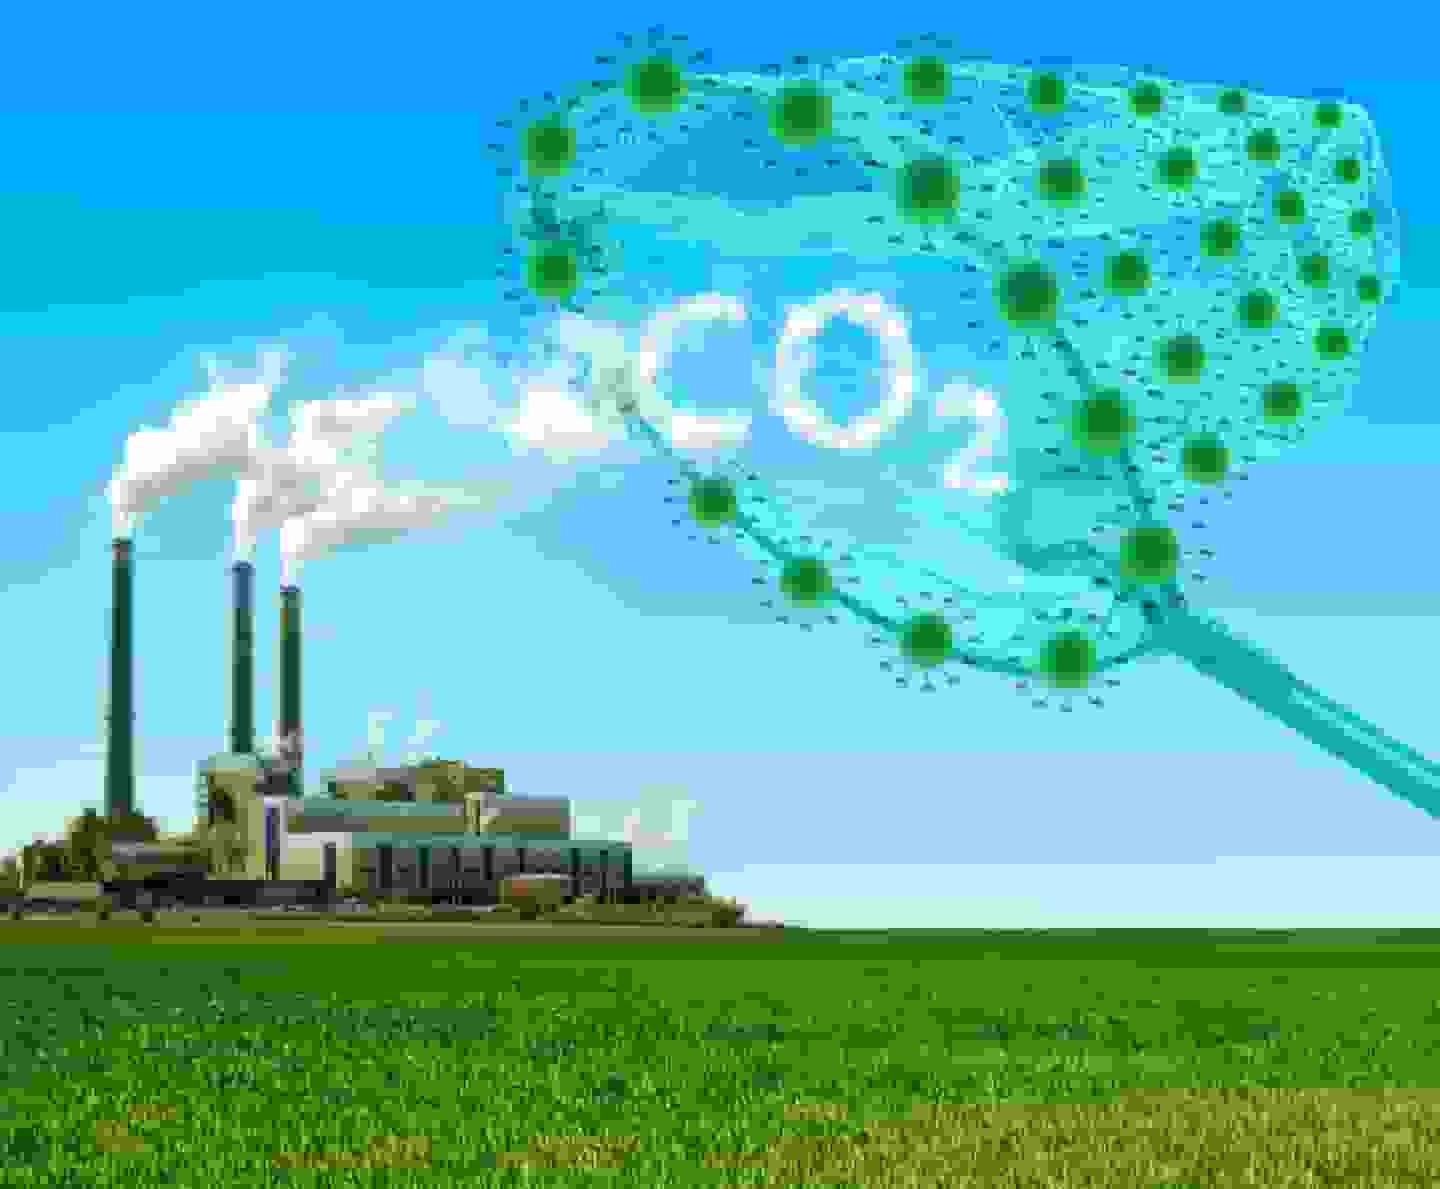 Khí CO2 là gì vậy?